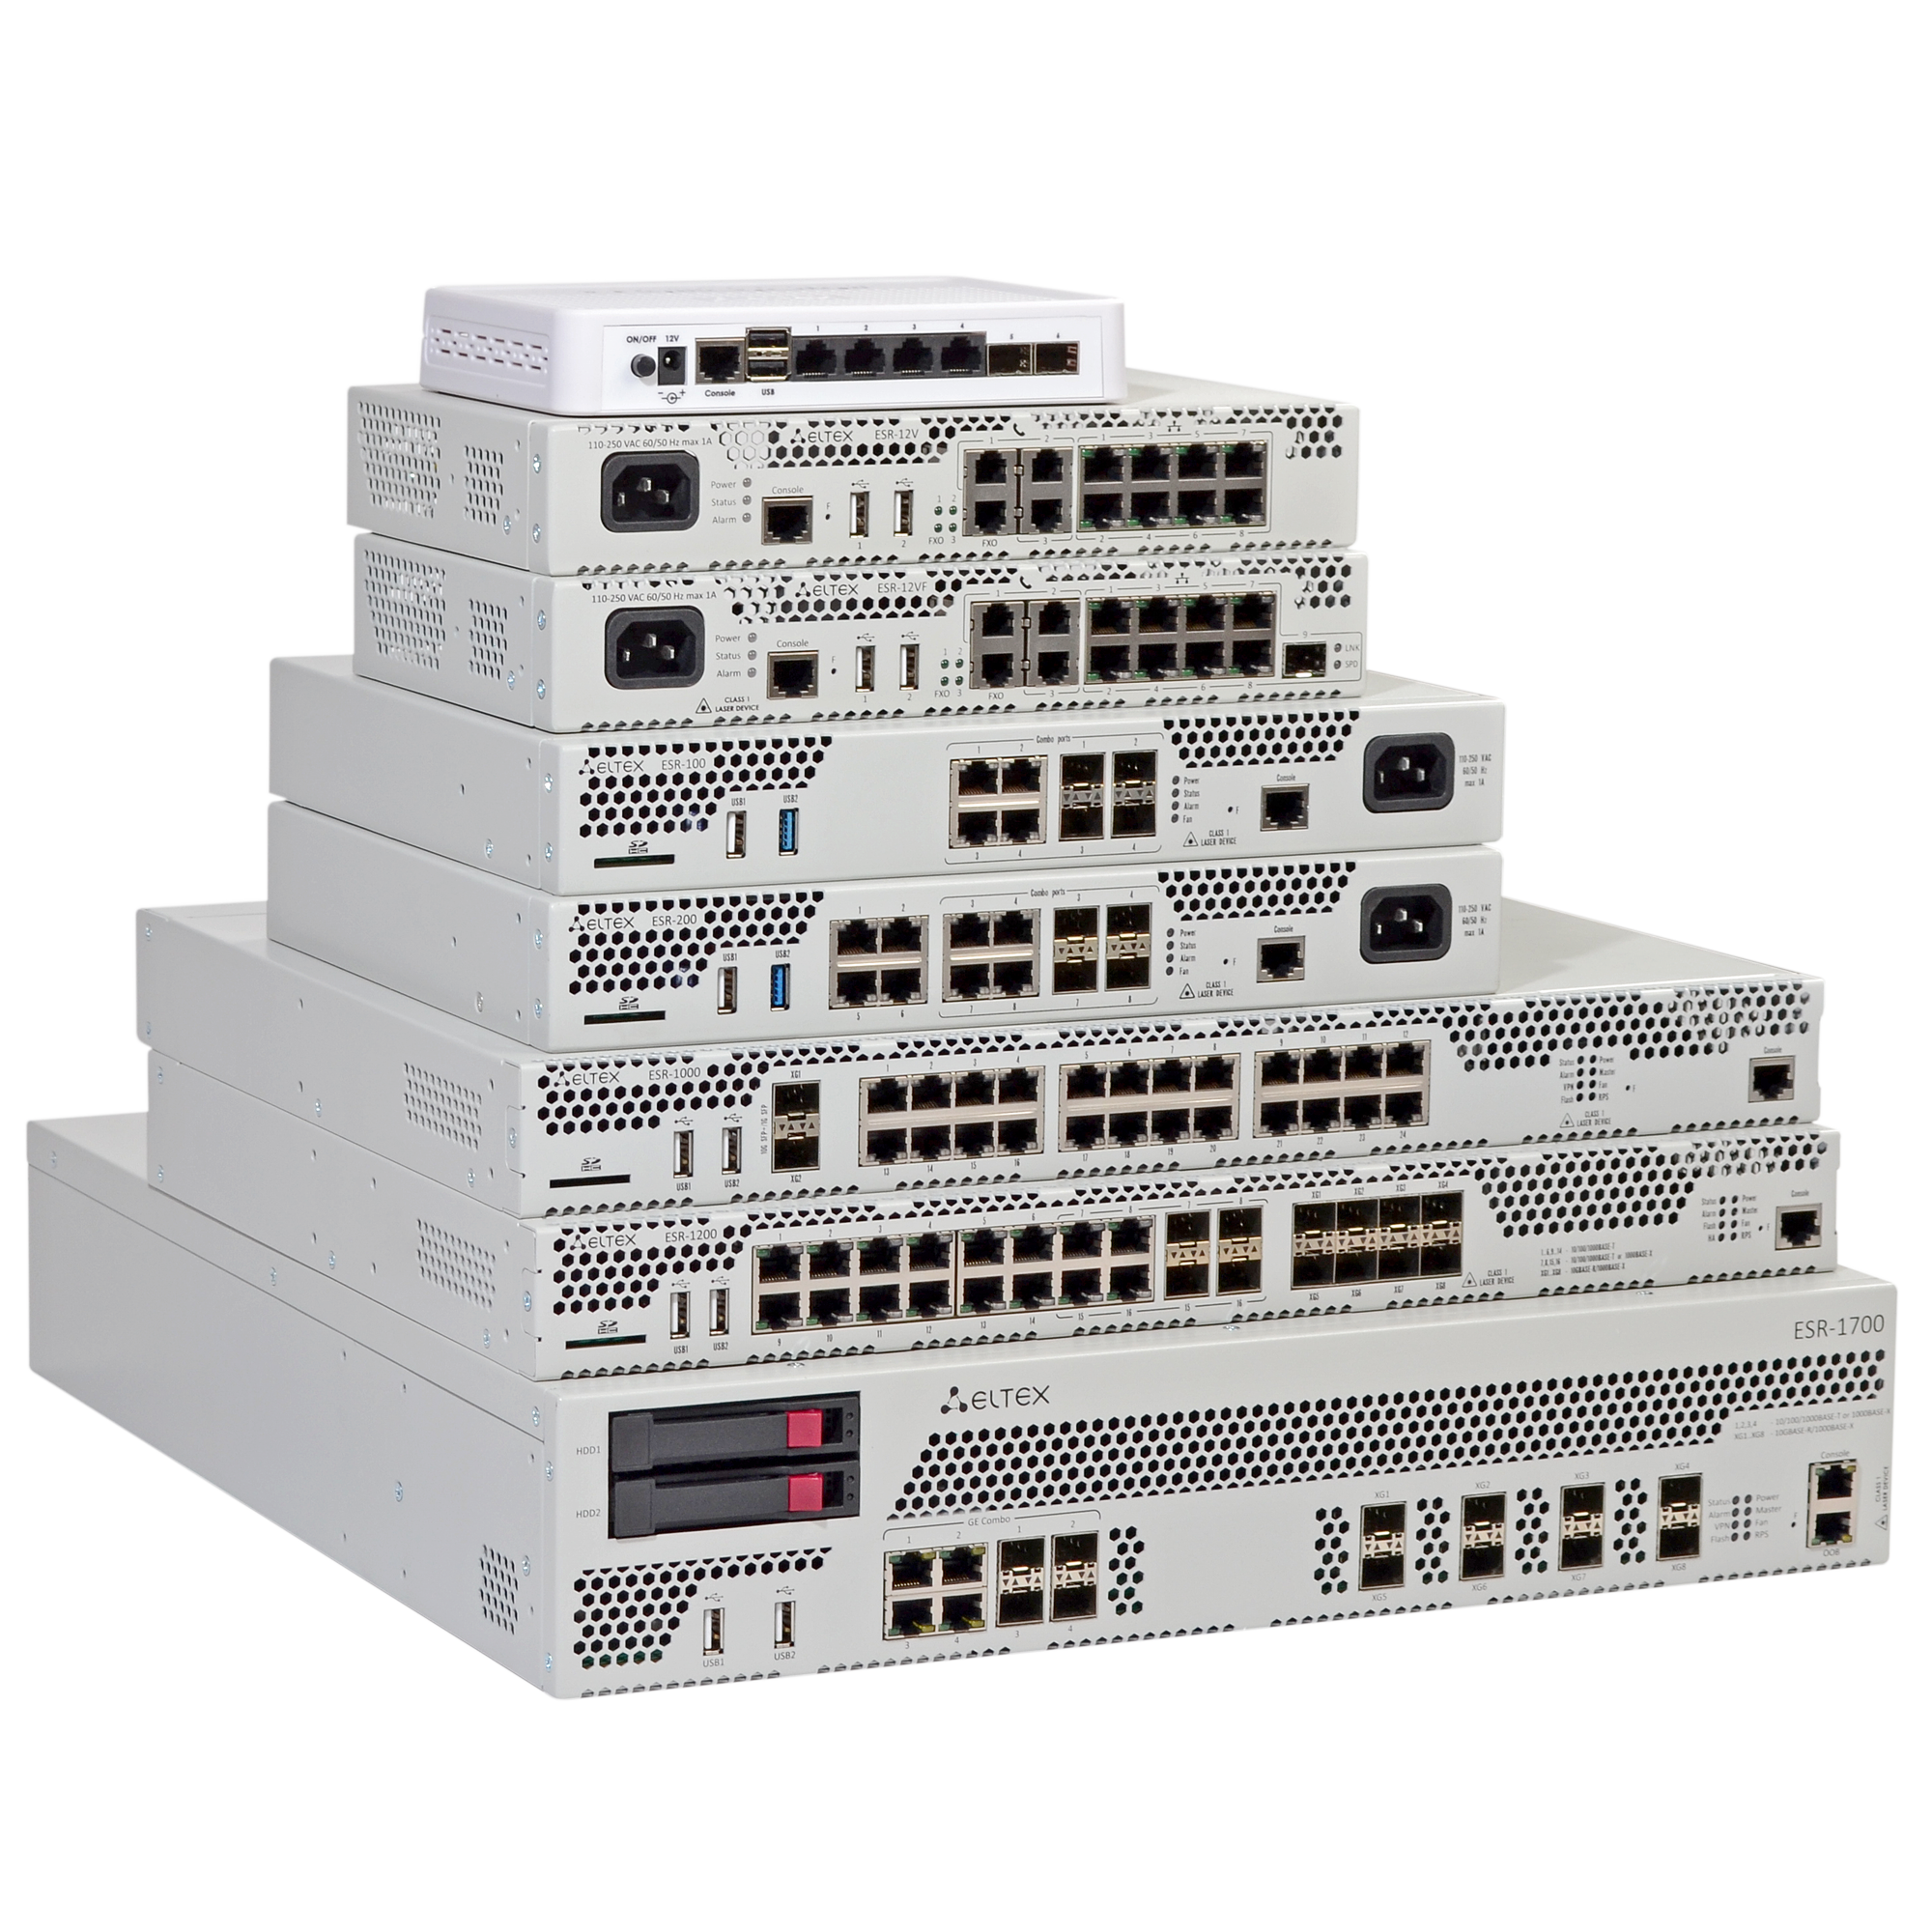 eltex-esr-service-routers